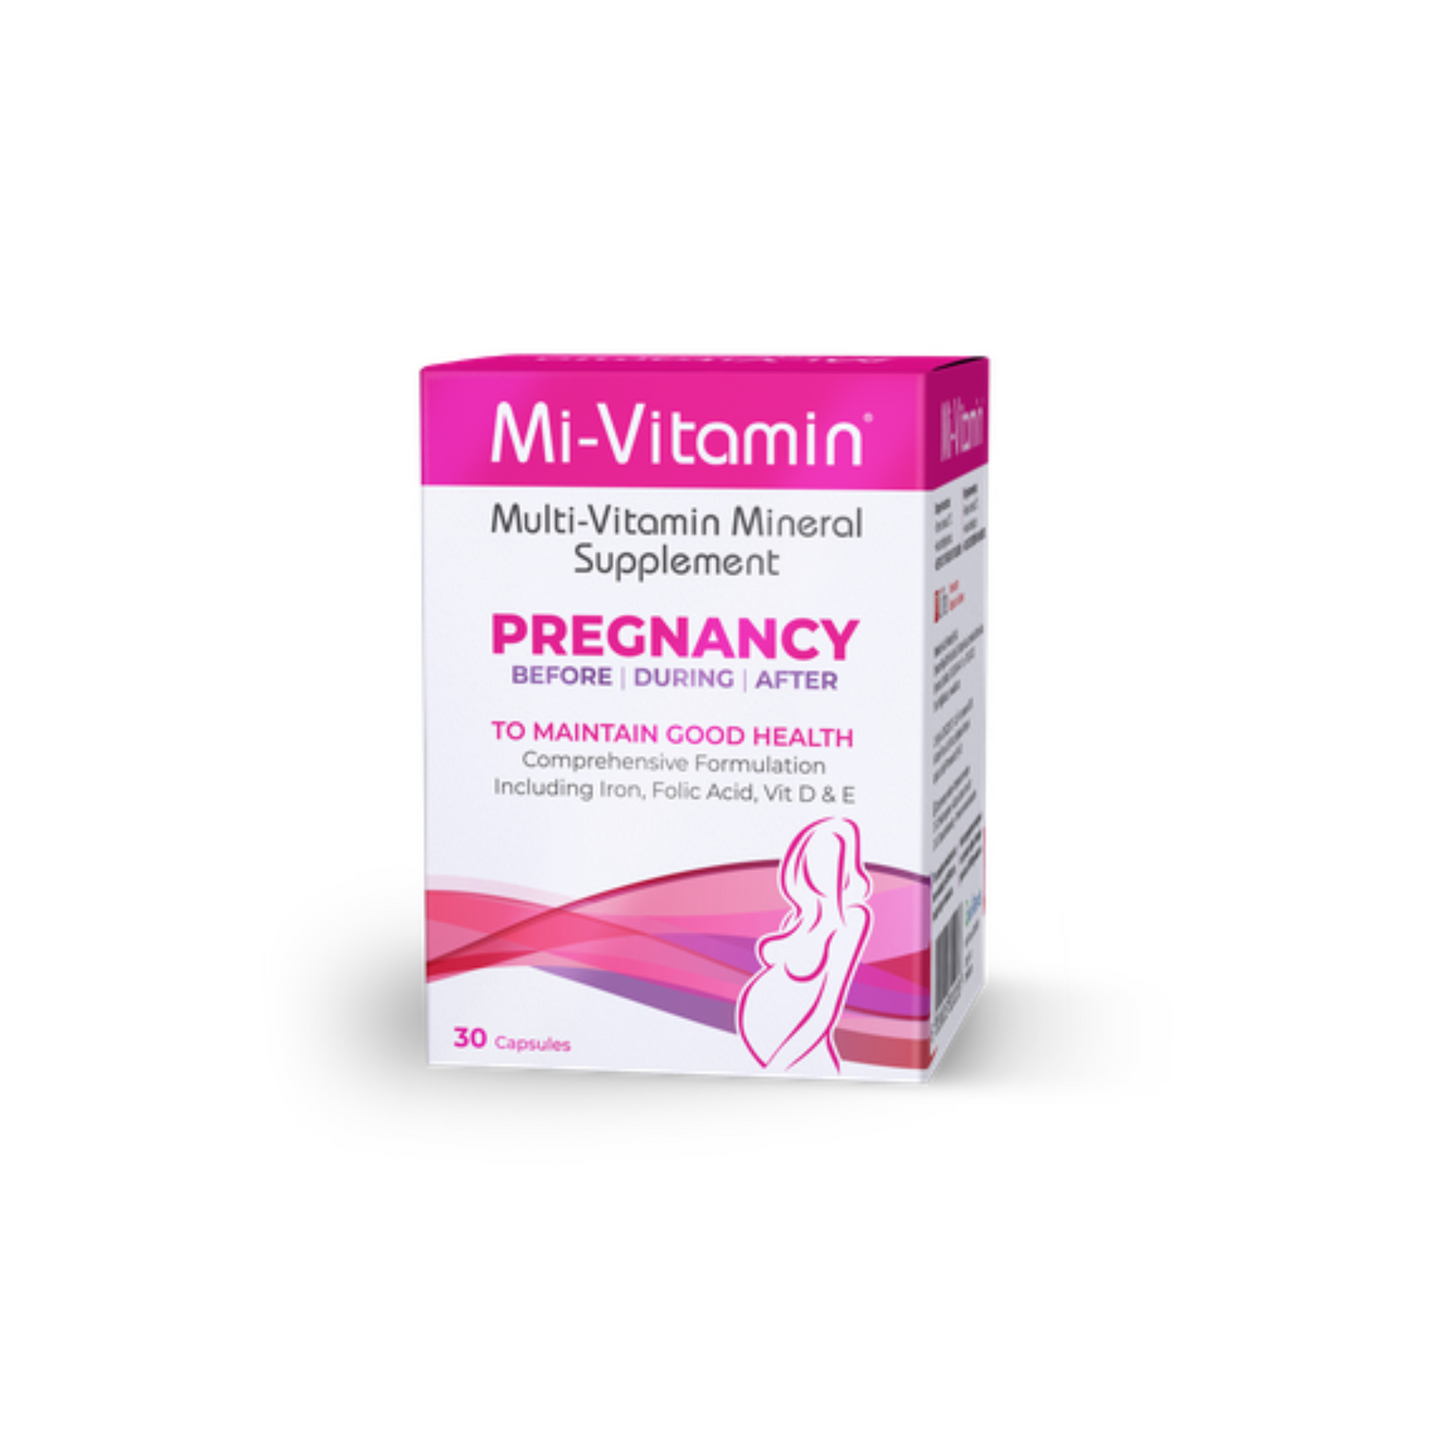 Mi-Vitamin Pregnancy